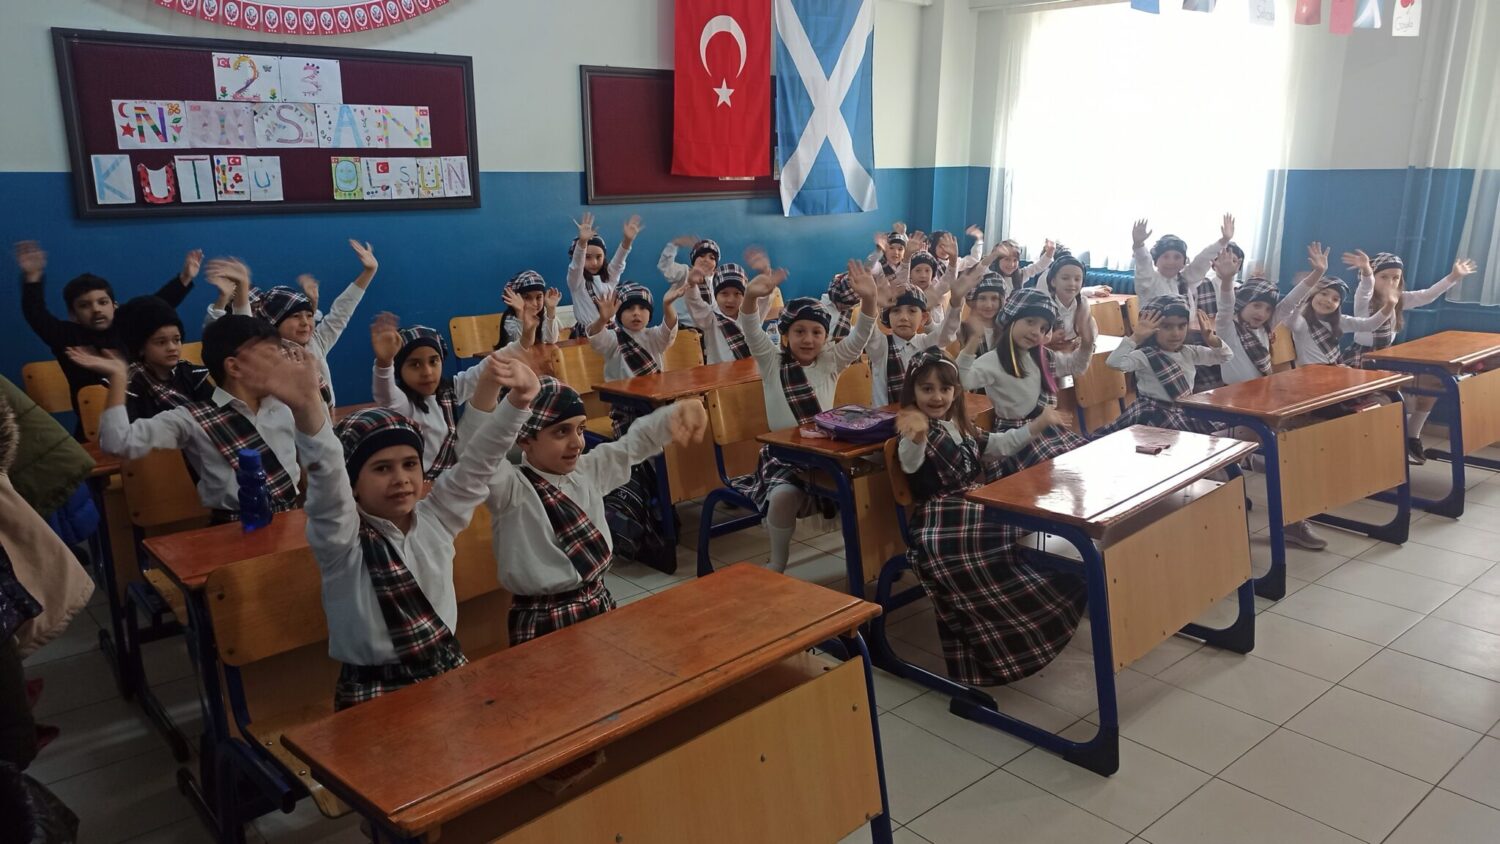 Bursa’daki ilköğretim okulu, 23 Nisan Ulusal Egemenlik ve Çocuk Bayramı’nın tatile gelmesi sebebiyle kutlamaları erken gerçekleştirdi. Dünyadaki kıtaları ve ülkeleri temsil eden ilköğretim öğrencileri, kıyafetleri ve öğrendikleri bilgilerle renkli görüntüler sergiledi.